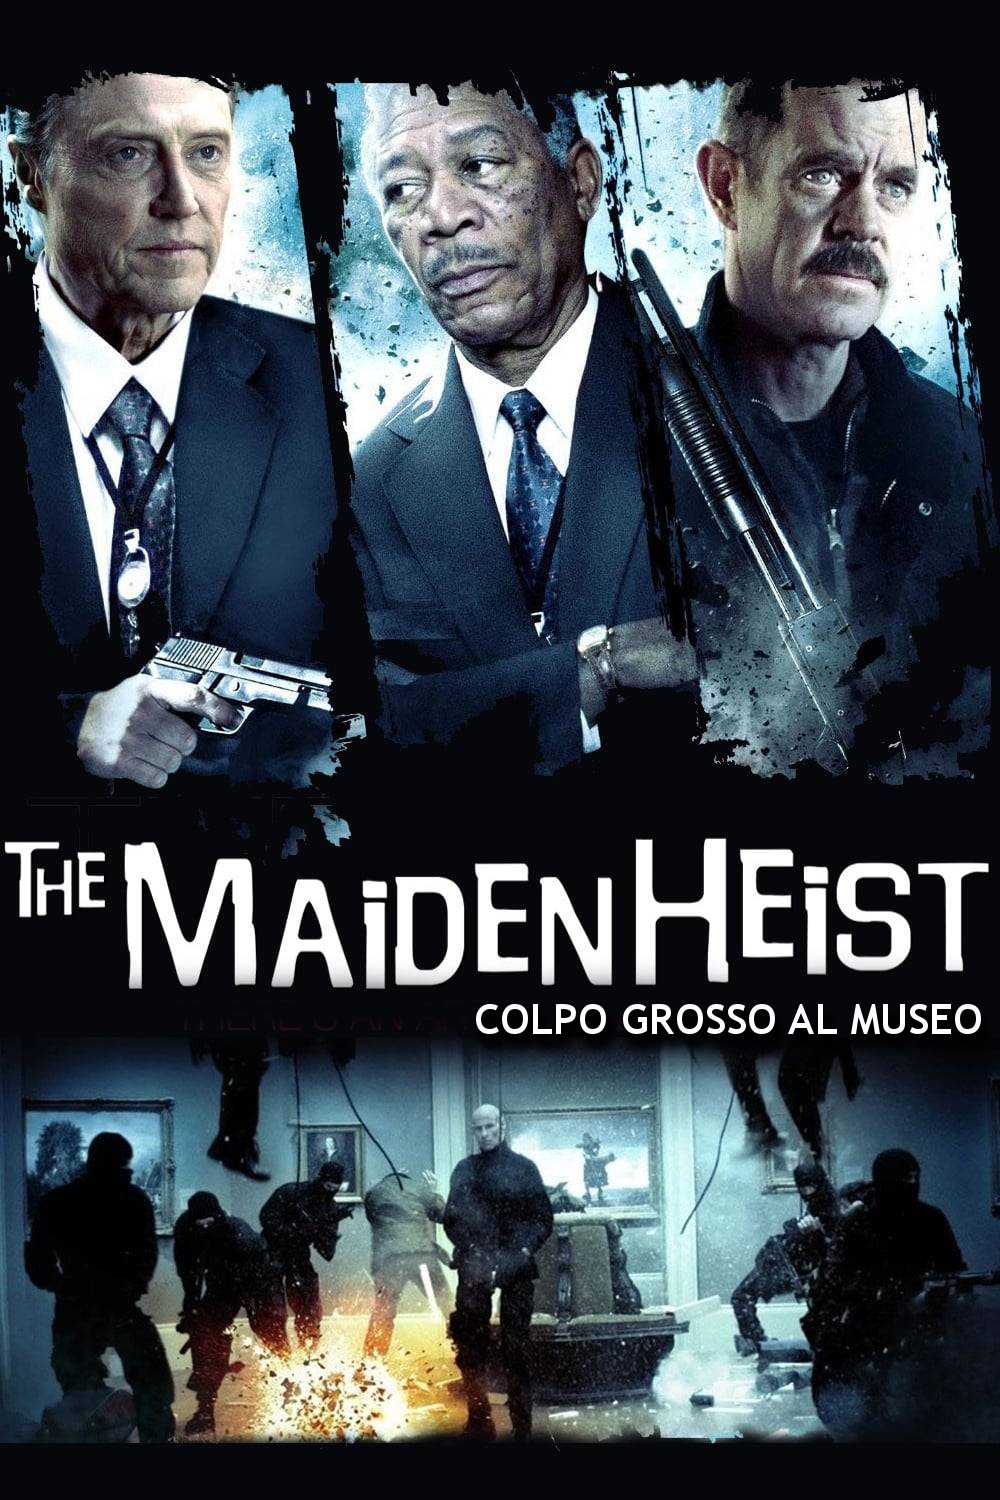 The Maiden Heist – Colpo grosso al museo [HD] (2009)